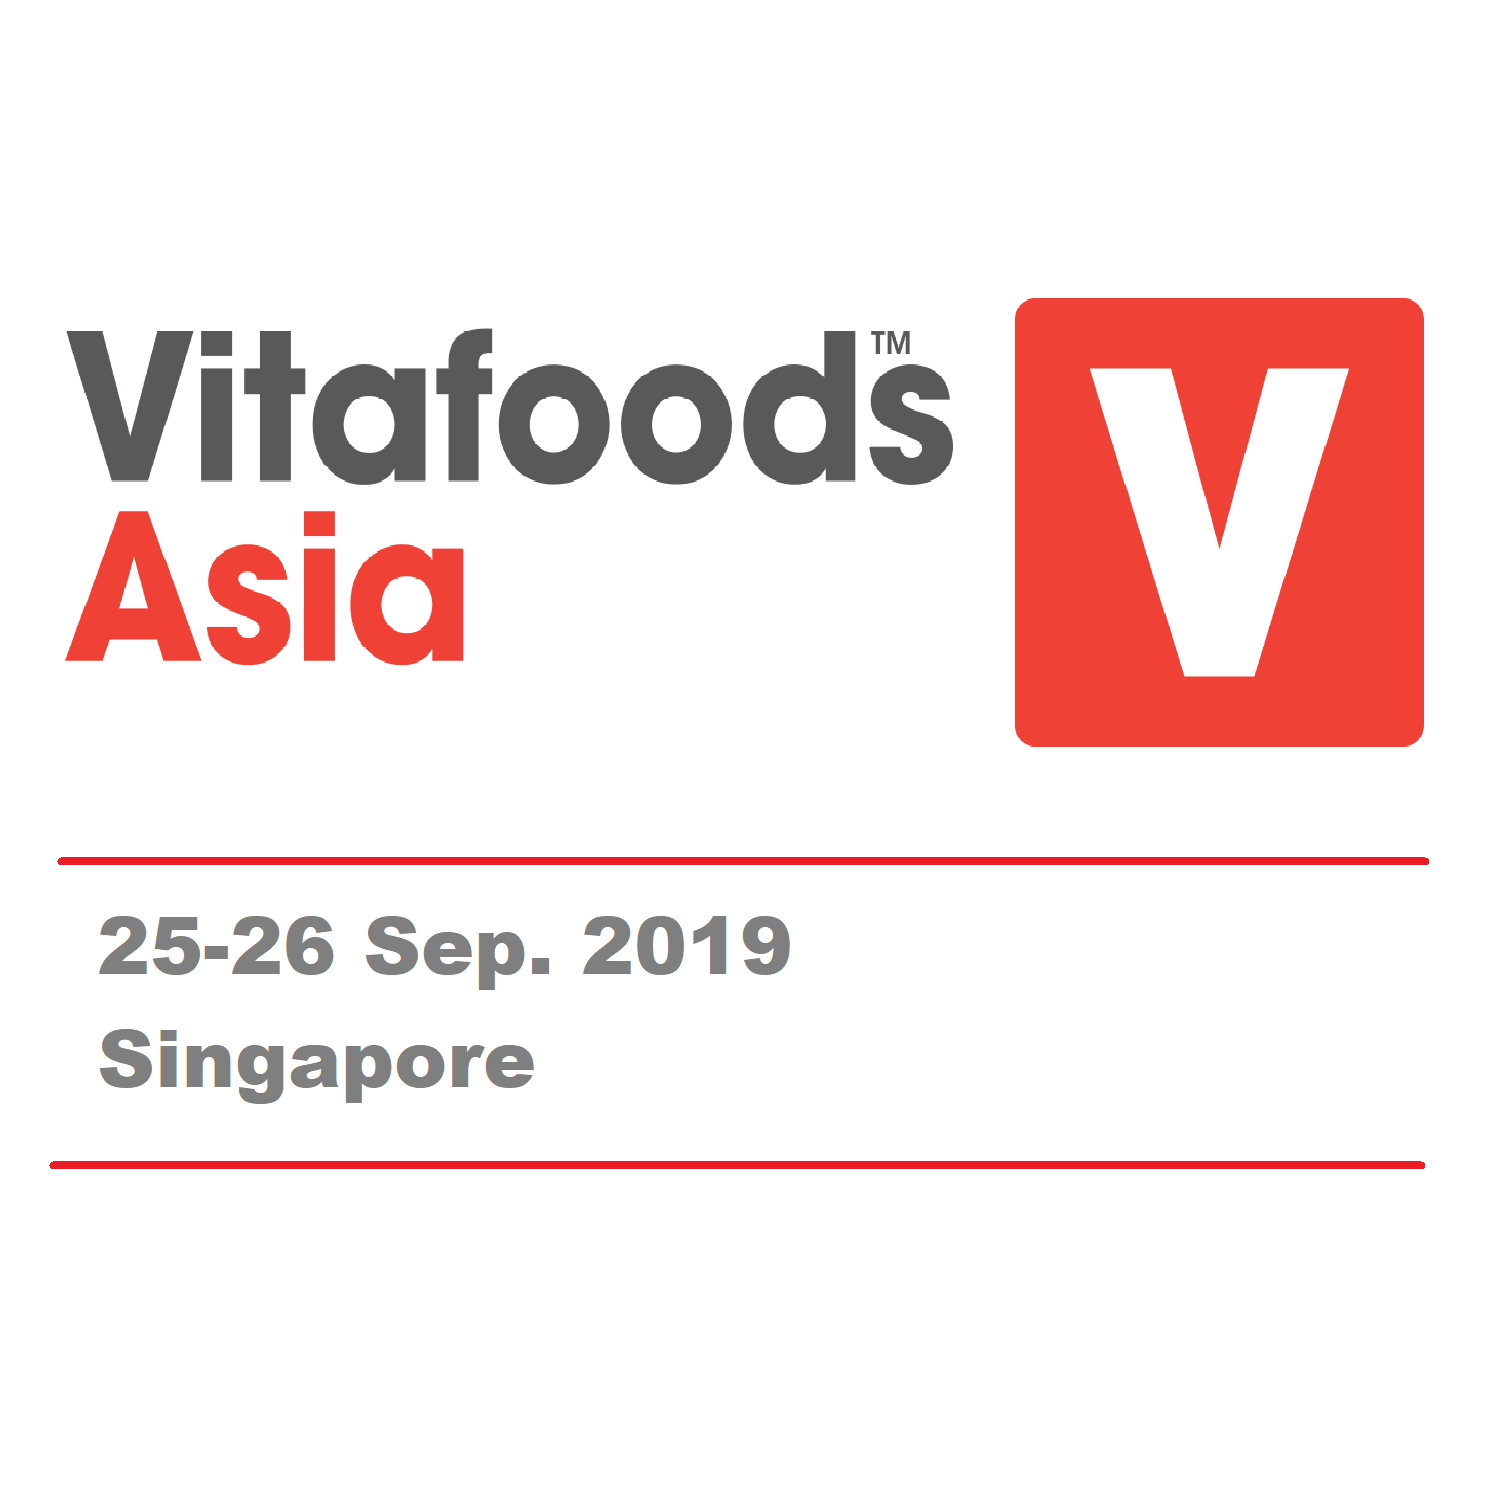 Exhibit, Vitafoods Asia 2019 Sep. 25-26